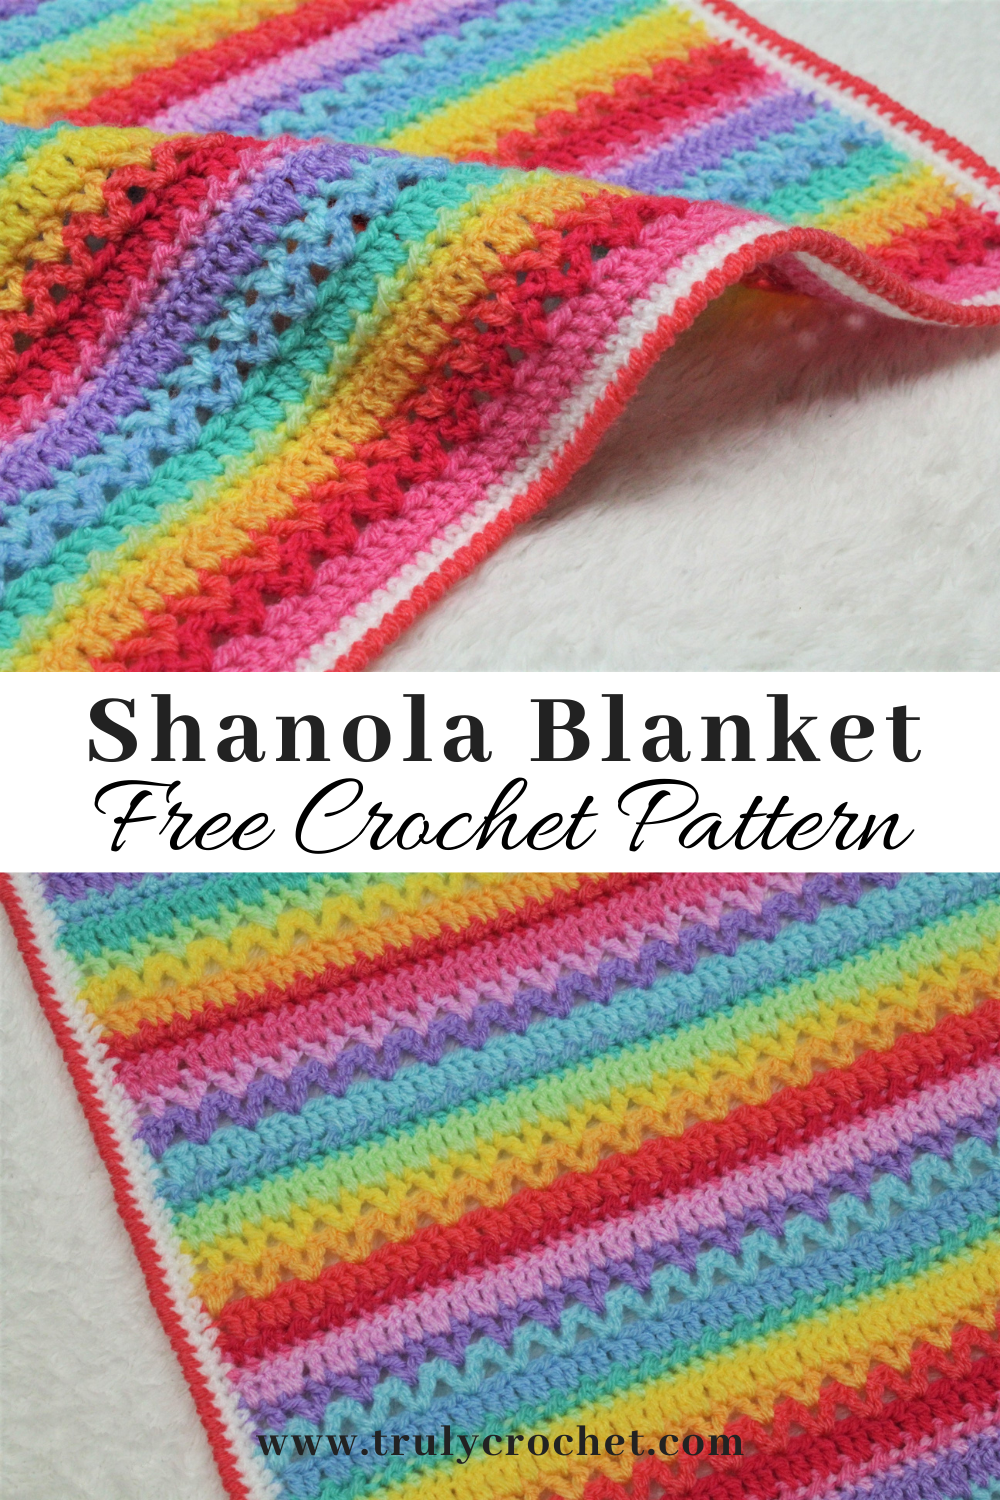 Pinterest Pin - Shanola Blanket